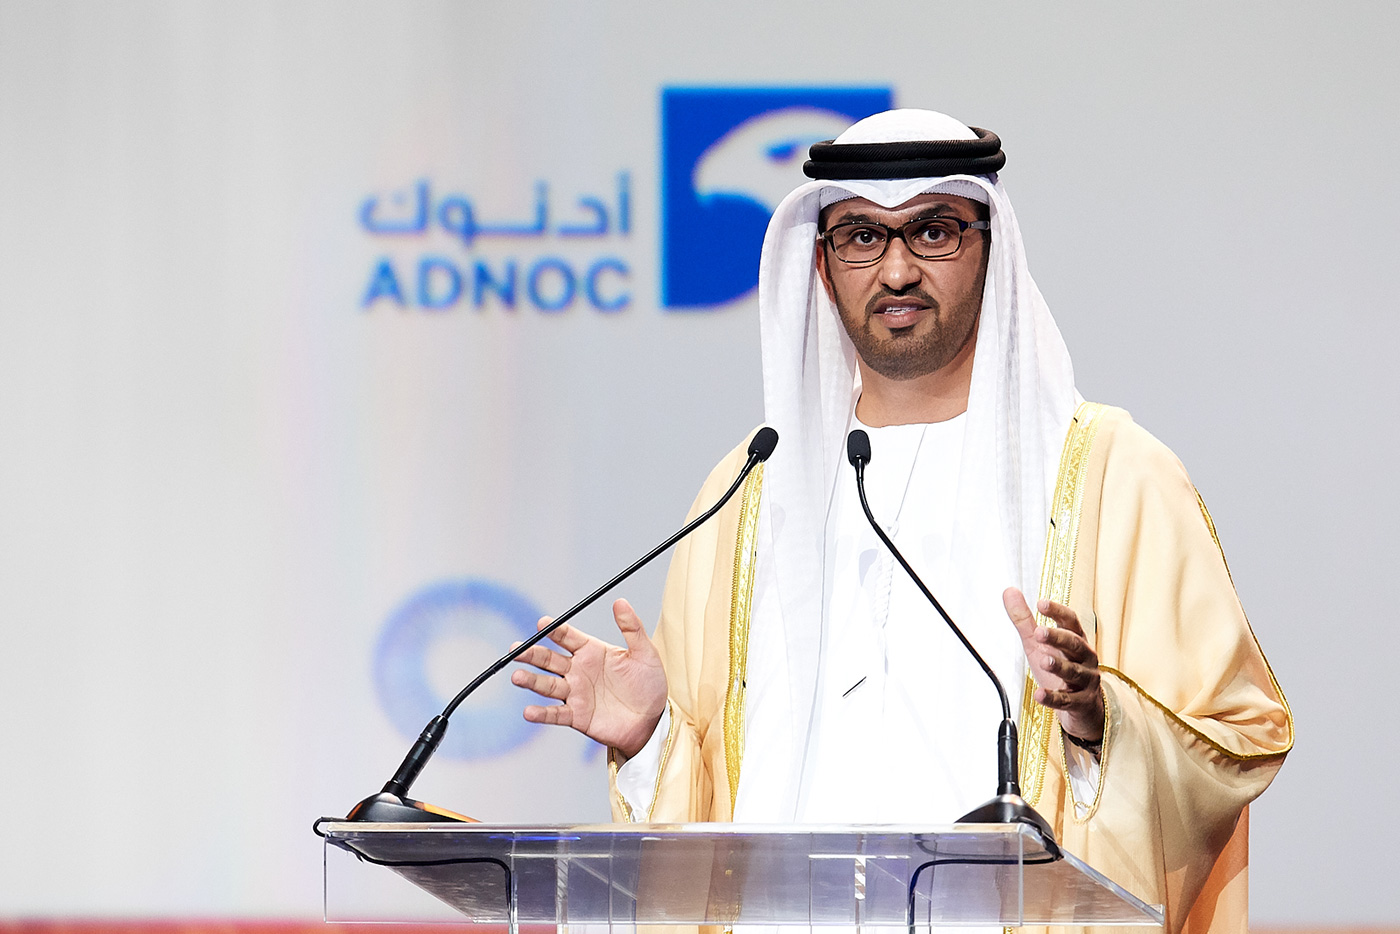 أدنوك أبوظبي: طلب النفط سيزداد بـ 3 ملايين برميل ونقص مرتقب